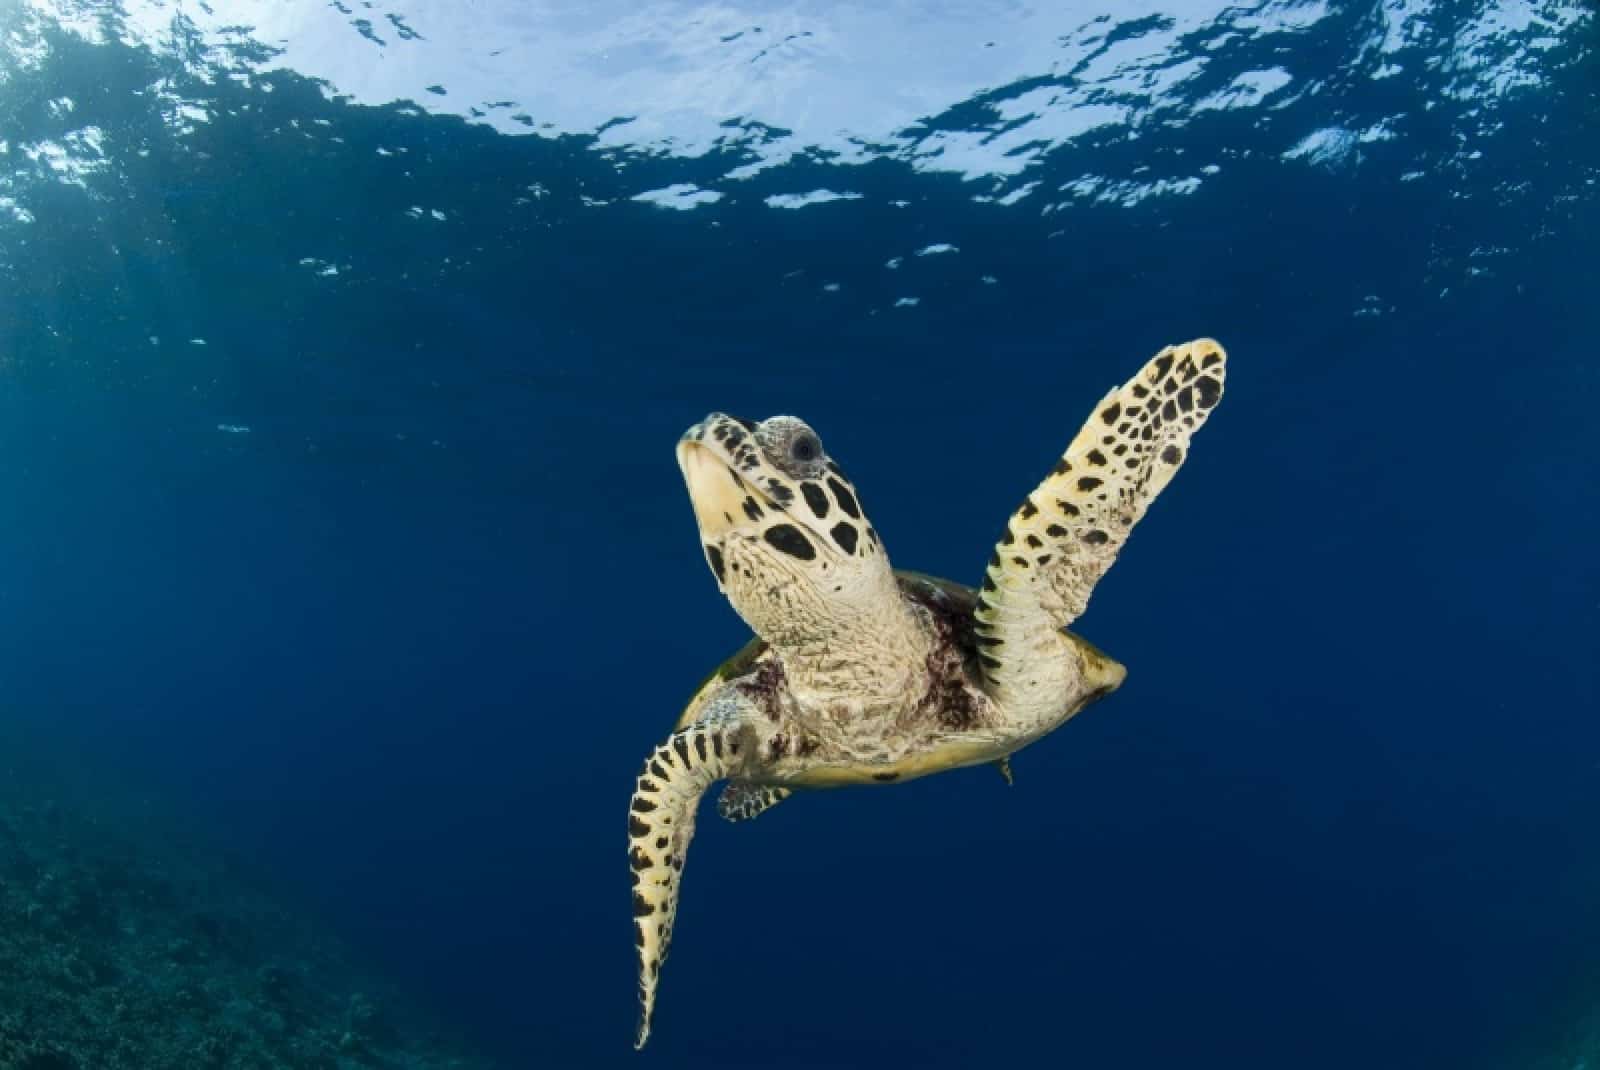 Hawksward Meeresschildkröte schwimmend, © by Jürgen Freund/WWF-Canon